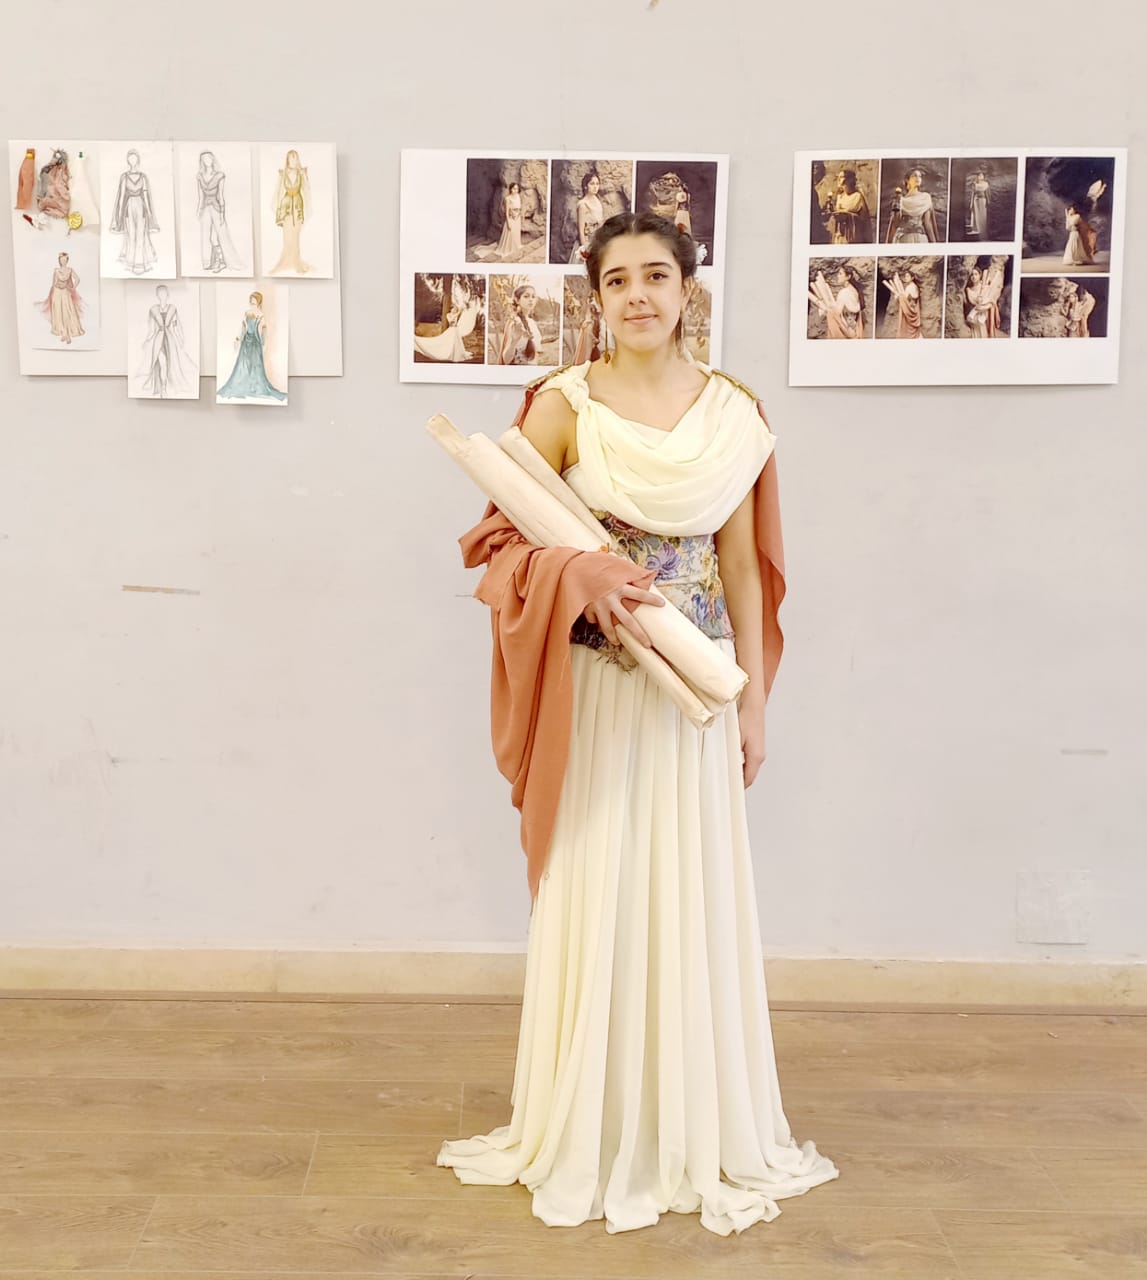 جانب من معرض تصميم أزياء مسرحية تاريخية بفنون جميلة الزمالك (30)